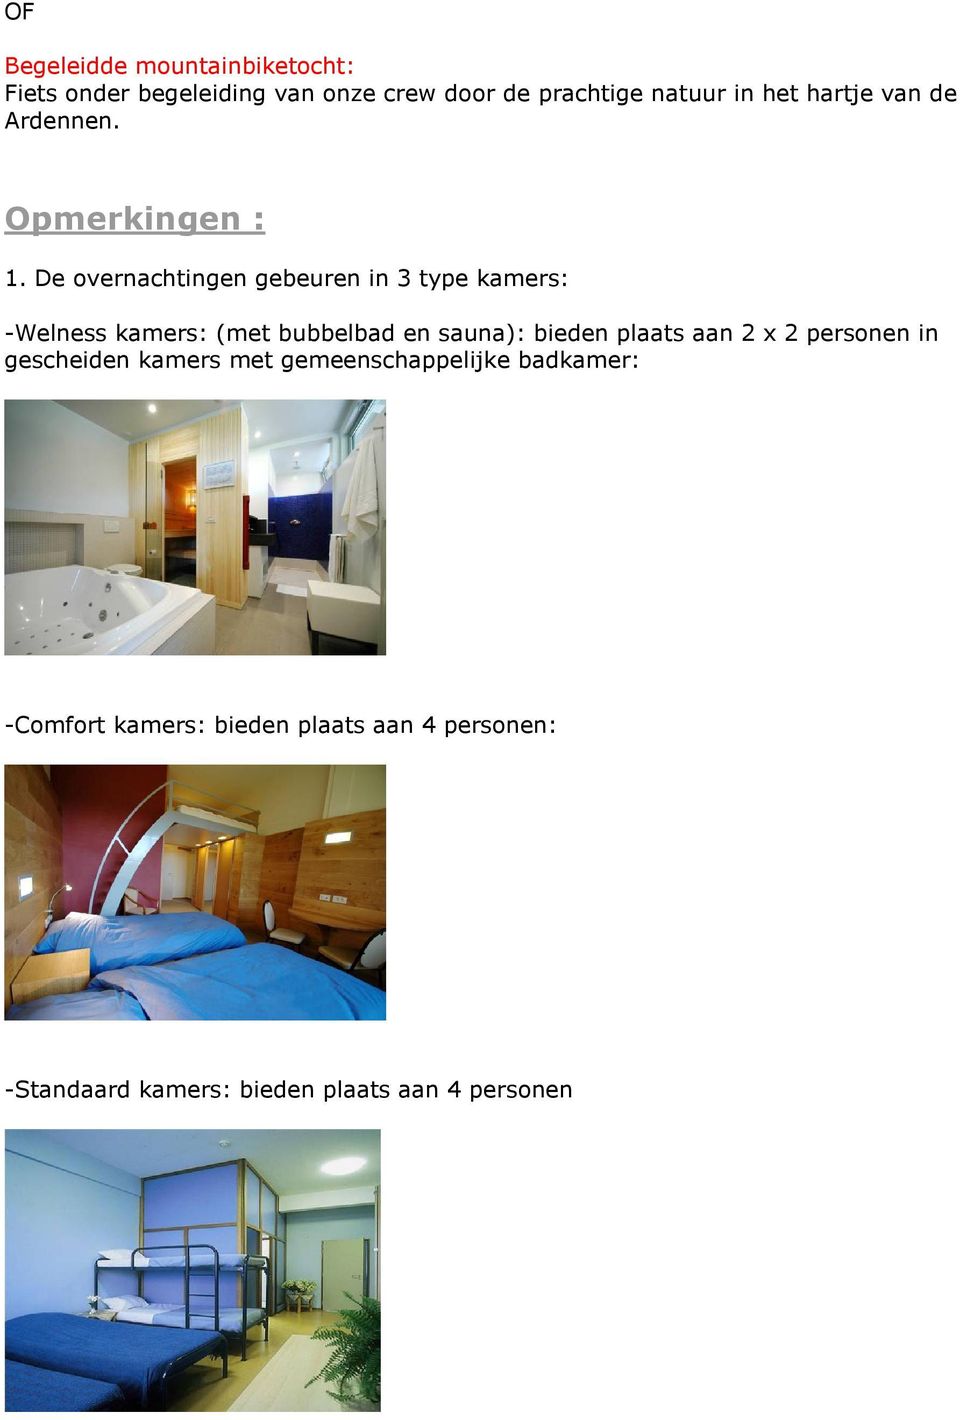 De overnachtingen gebeuren in 3 type kamers: -Welness kamers: (met bubbelbad en sauna): bieden plaats